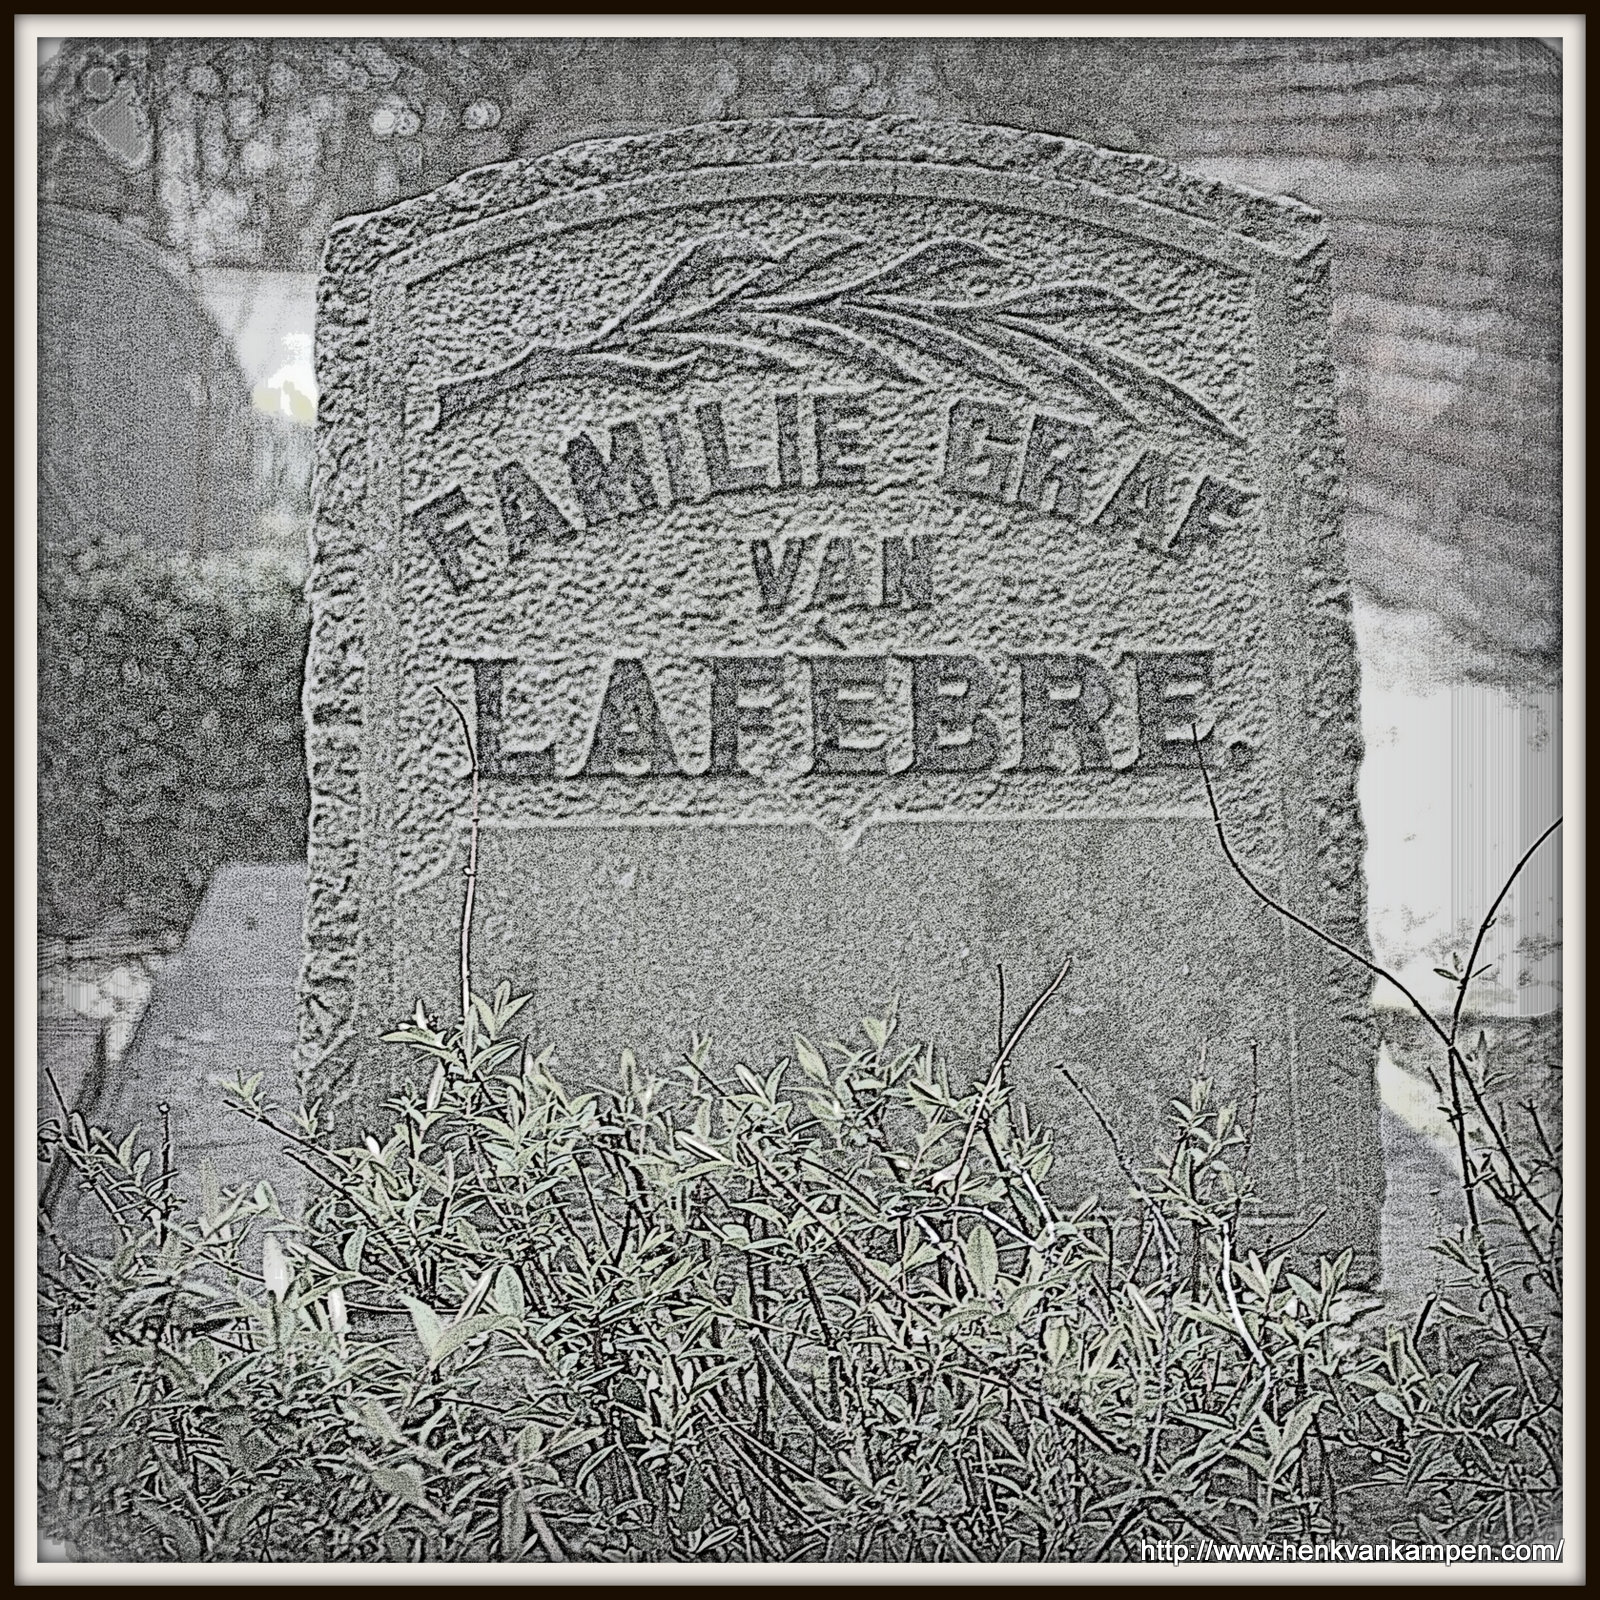 Lafebre family grave, Kerkveld cemetery, Nieuwegein